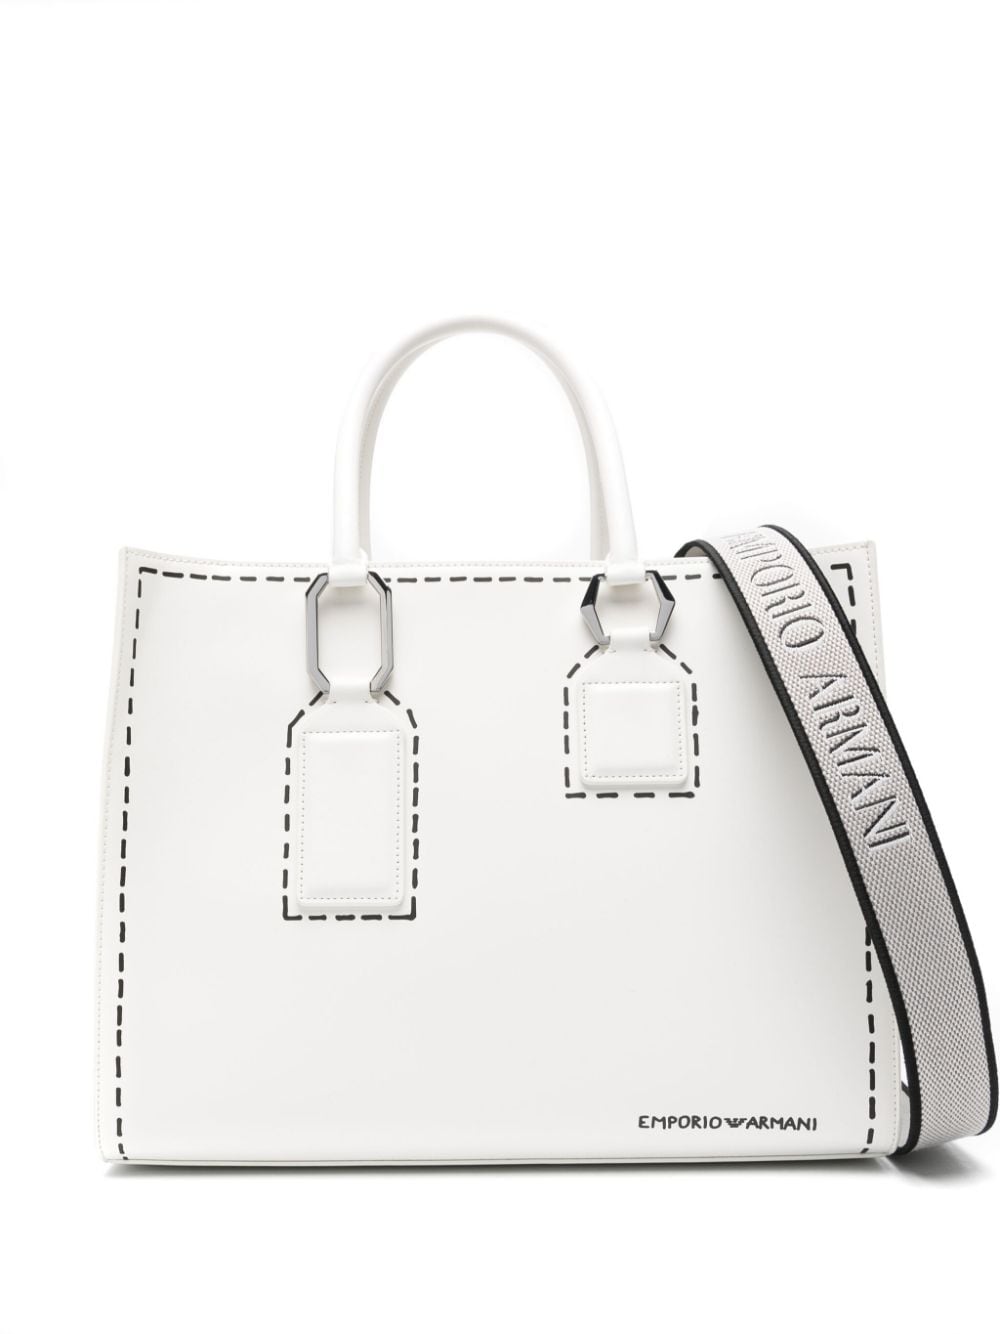 Emporio Armani trompe l'oeil stitching-print tote bag - White von Emporio Armani